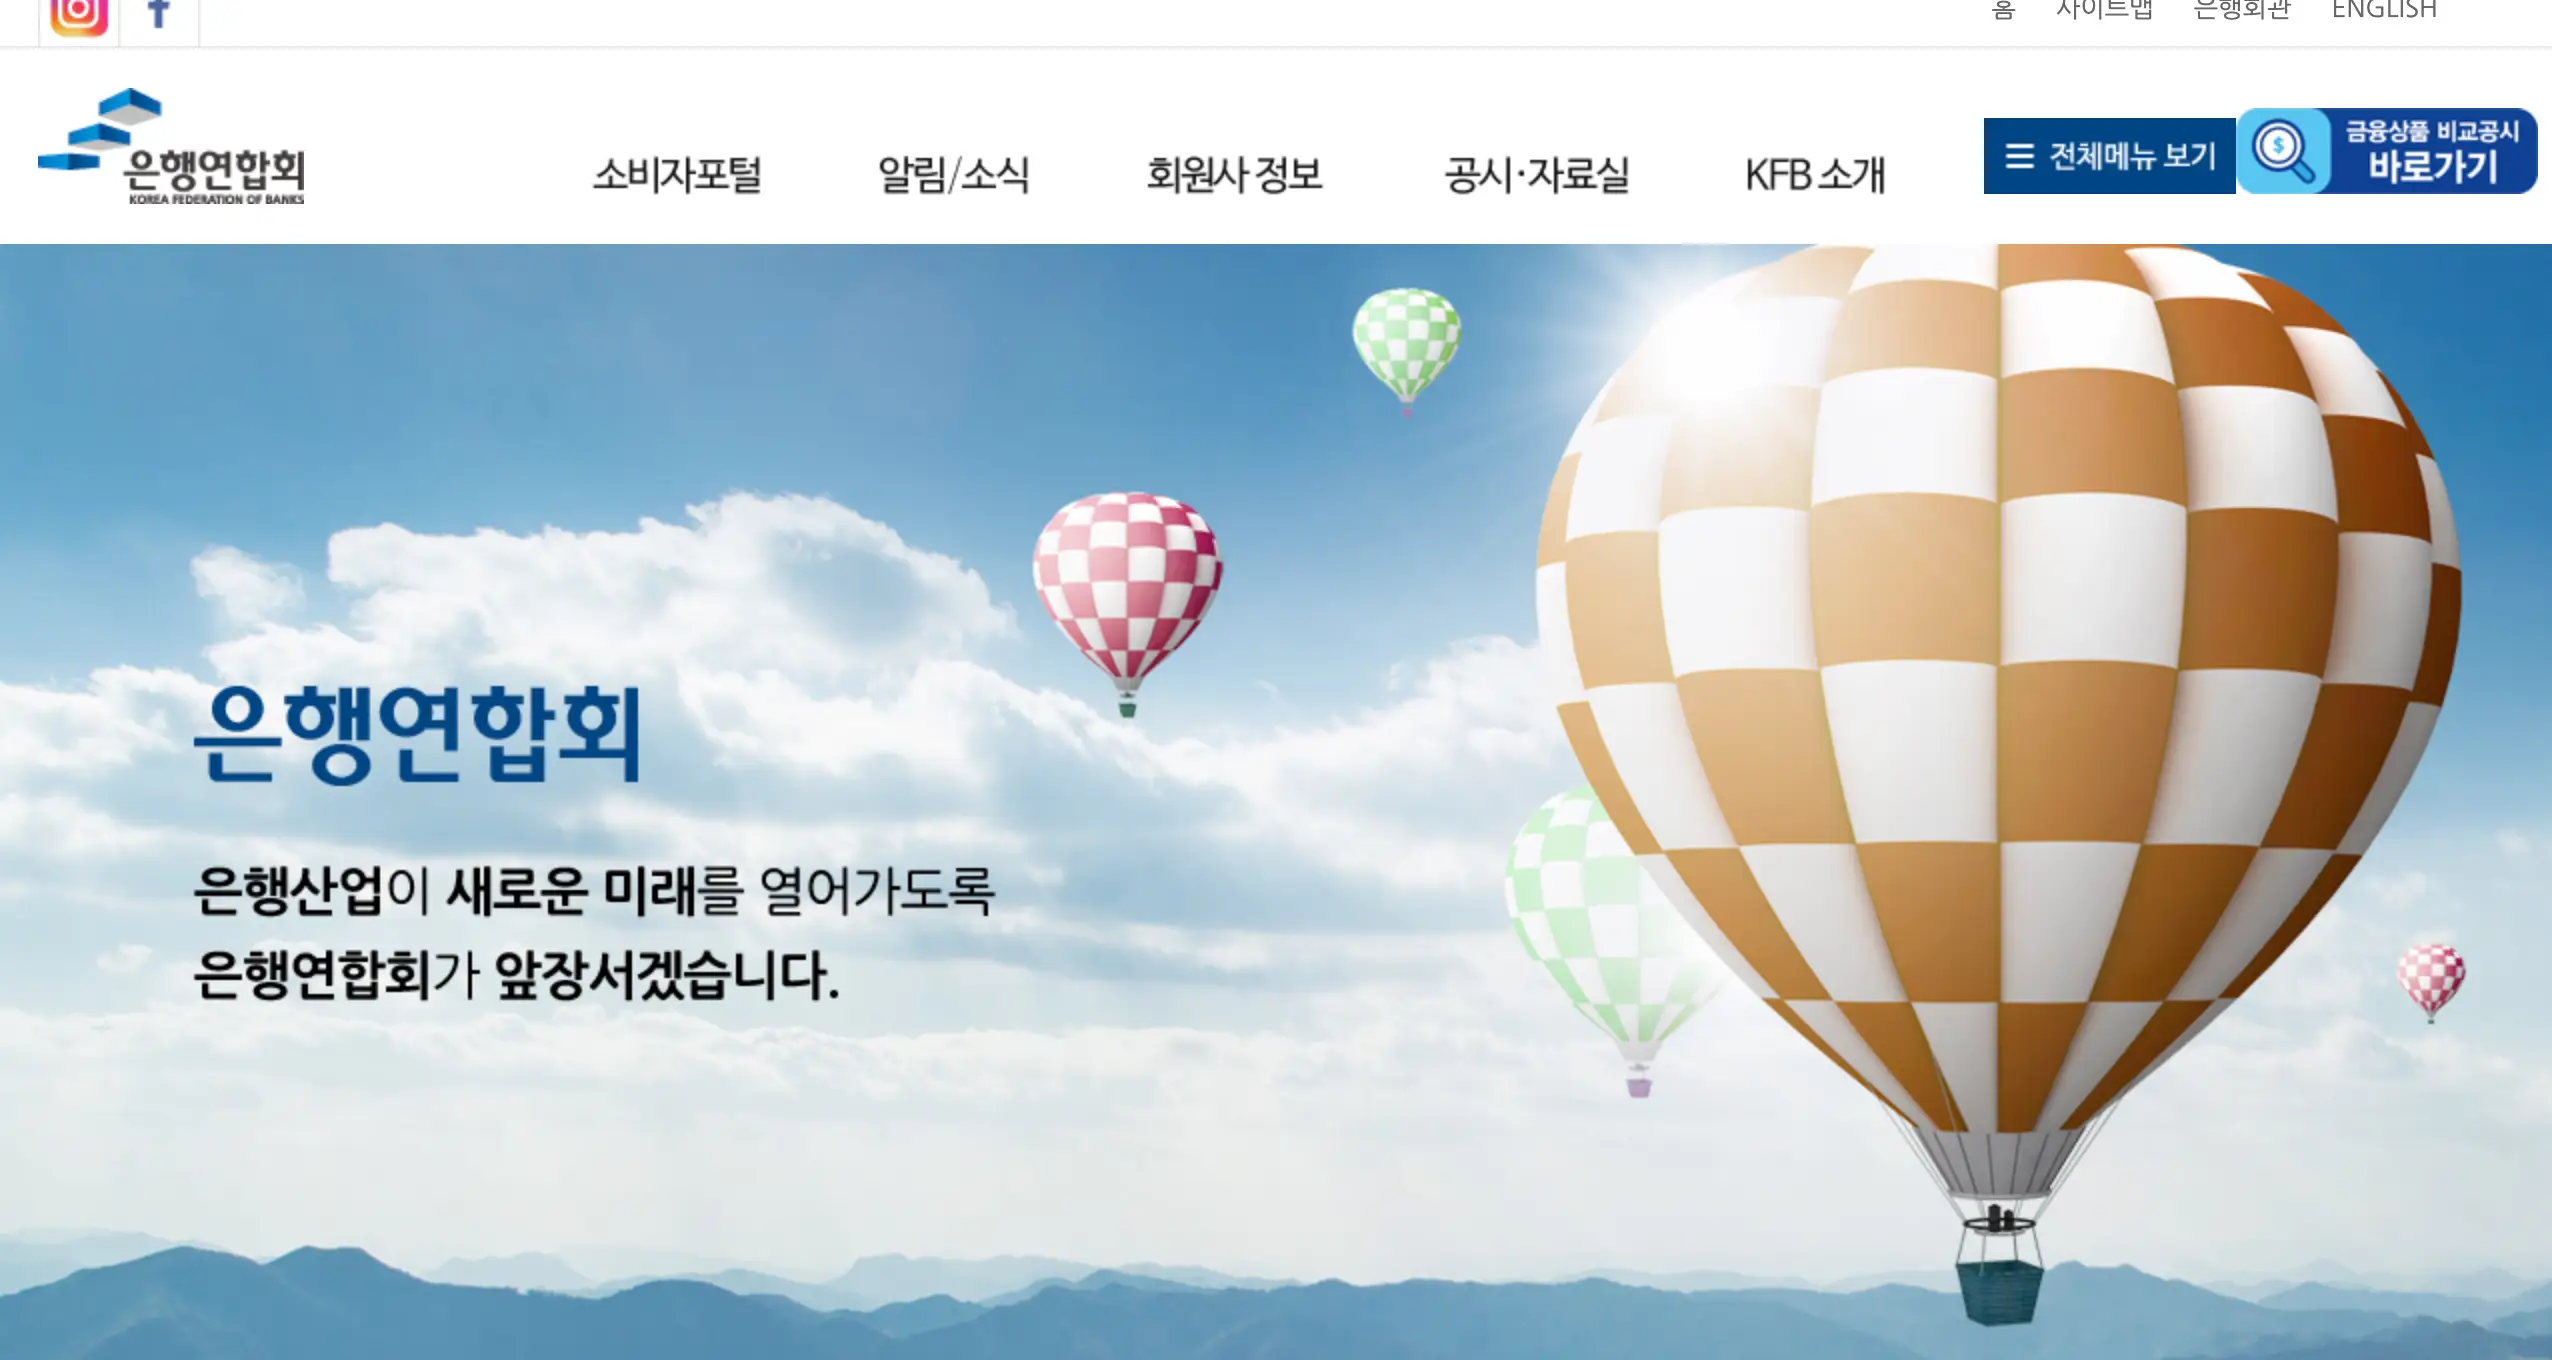 한국은행연합회 웹사이트에서 정기예금 및 적금 금리 비교를 할 수 있다.